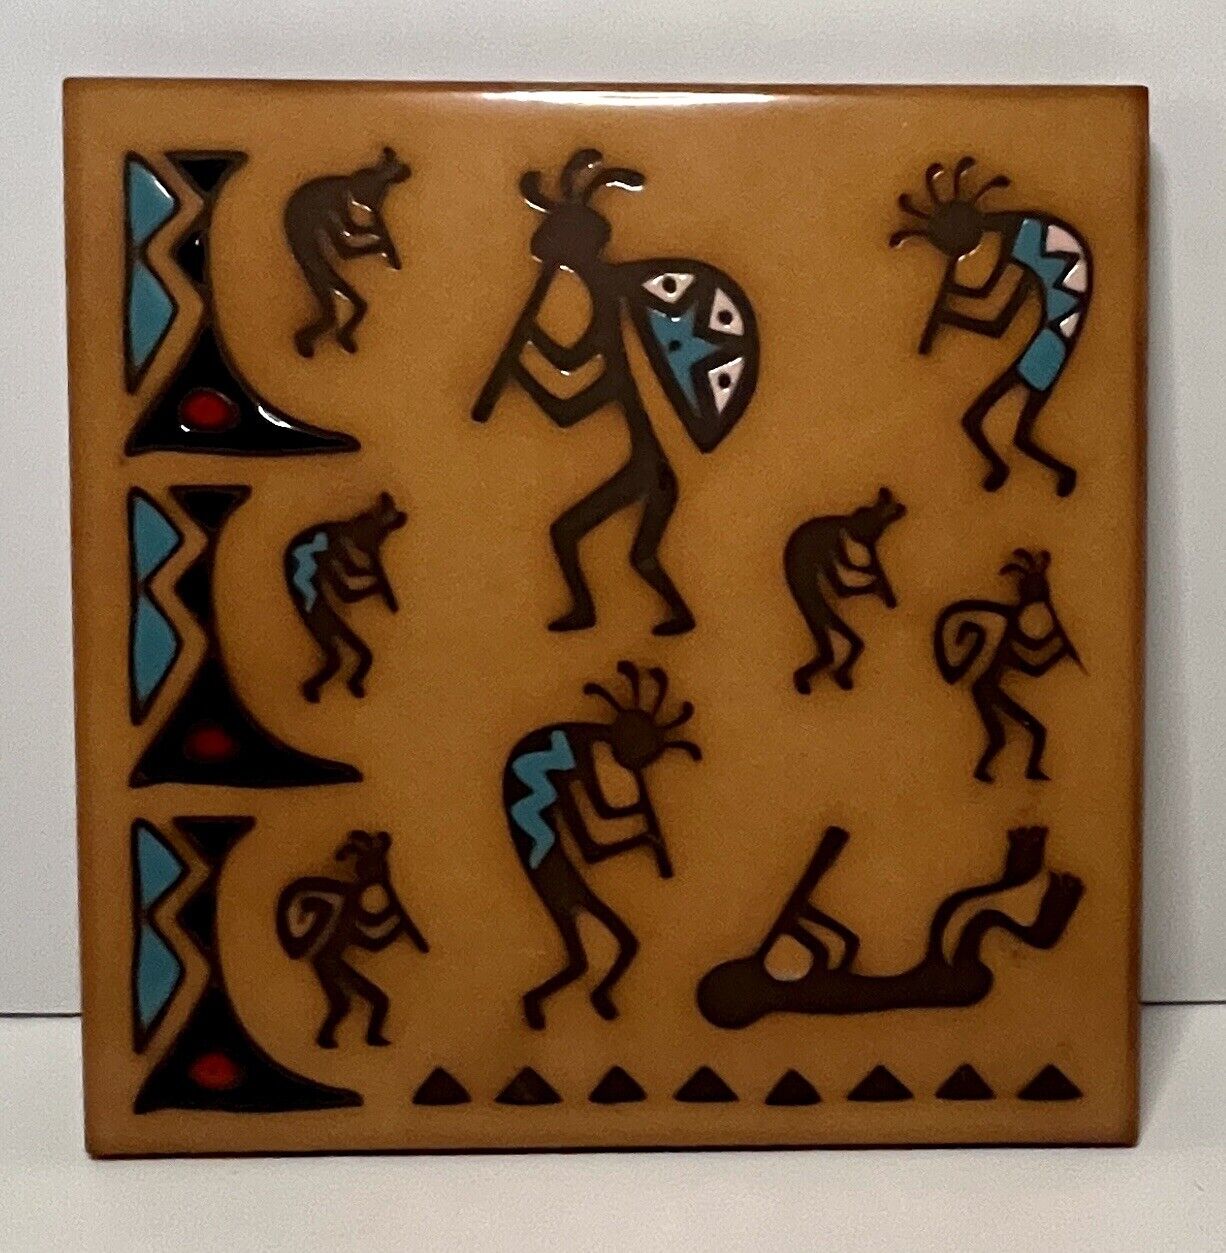 Masterworks Kokopelli Southwest Folk Art Handcrafted Ceramic Tile Trivet 1992 6\